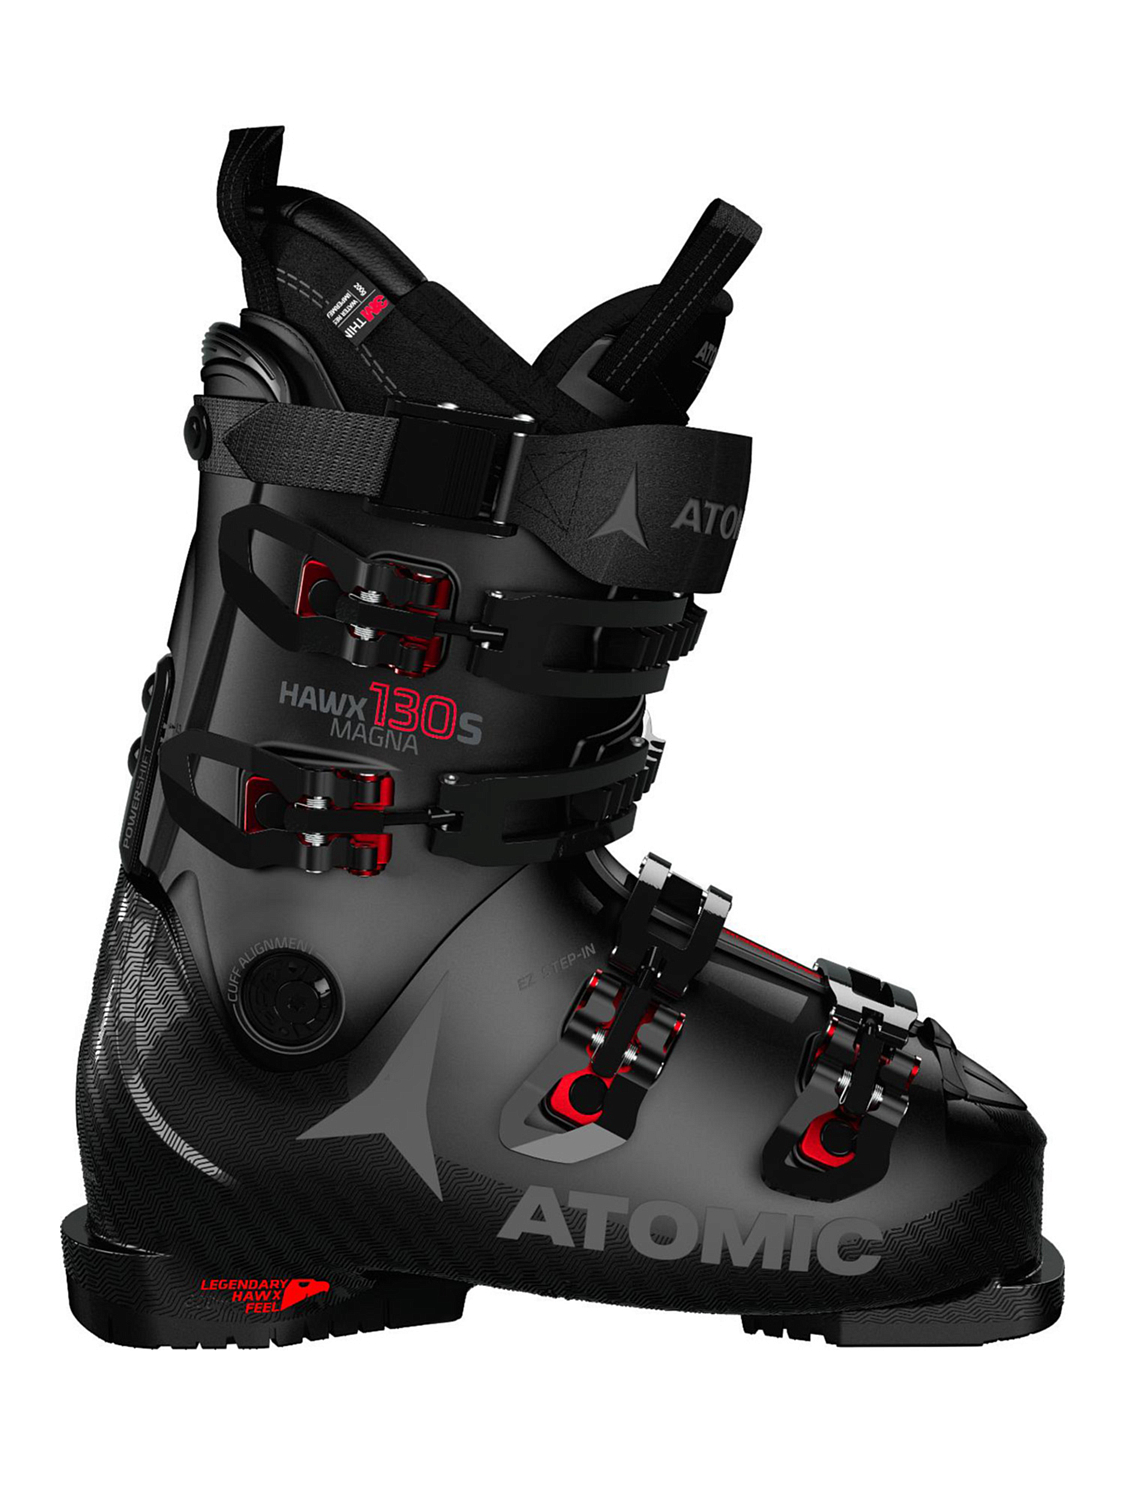 Горнолыжные ботинки ATOMIC HAWX MAGNA 130 Black/Red